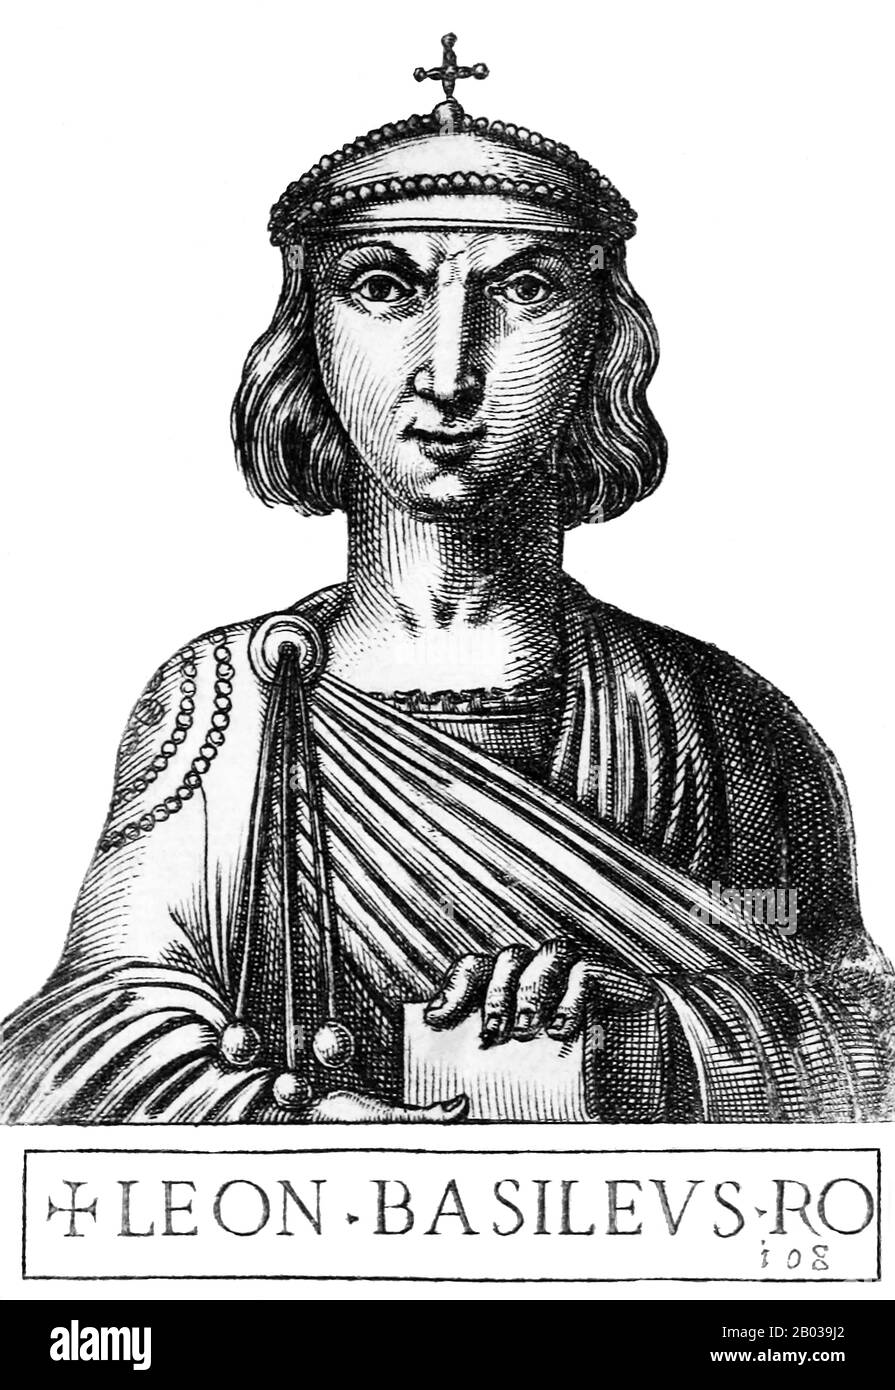 Leo III (685-741), auch Leo der Isaurier und Leo der Syrer genannt und dessen ursprünglicher Name Konon war, wurde in der syrischen Provinz Commagene geboren. Er diente unter Kaiser Justinian II., als der Kaiser versuchte, seinen Thron zurückzuerobern. Nach Justinians Sieg wurde Leo zum Kampf gegen den Umayyaden-Kalifat geschickt und von Kaiser Anastasius II. Zum Gesamtkommandanten ernannt Leo wurde ehrgeizig und verschanzte sich mit seinen Kommandeuren, um den neuen Kaiser, Theodosius III., zu stürzen Er trat 717 in konstantinische Stadt ein und zwang Theodosius zur Abdankung und wurde zum Leo III. Gekrönt Stockfoto